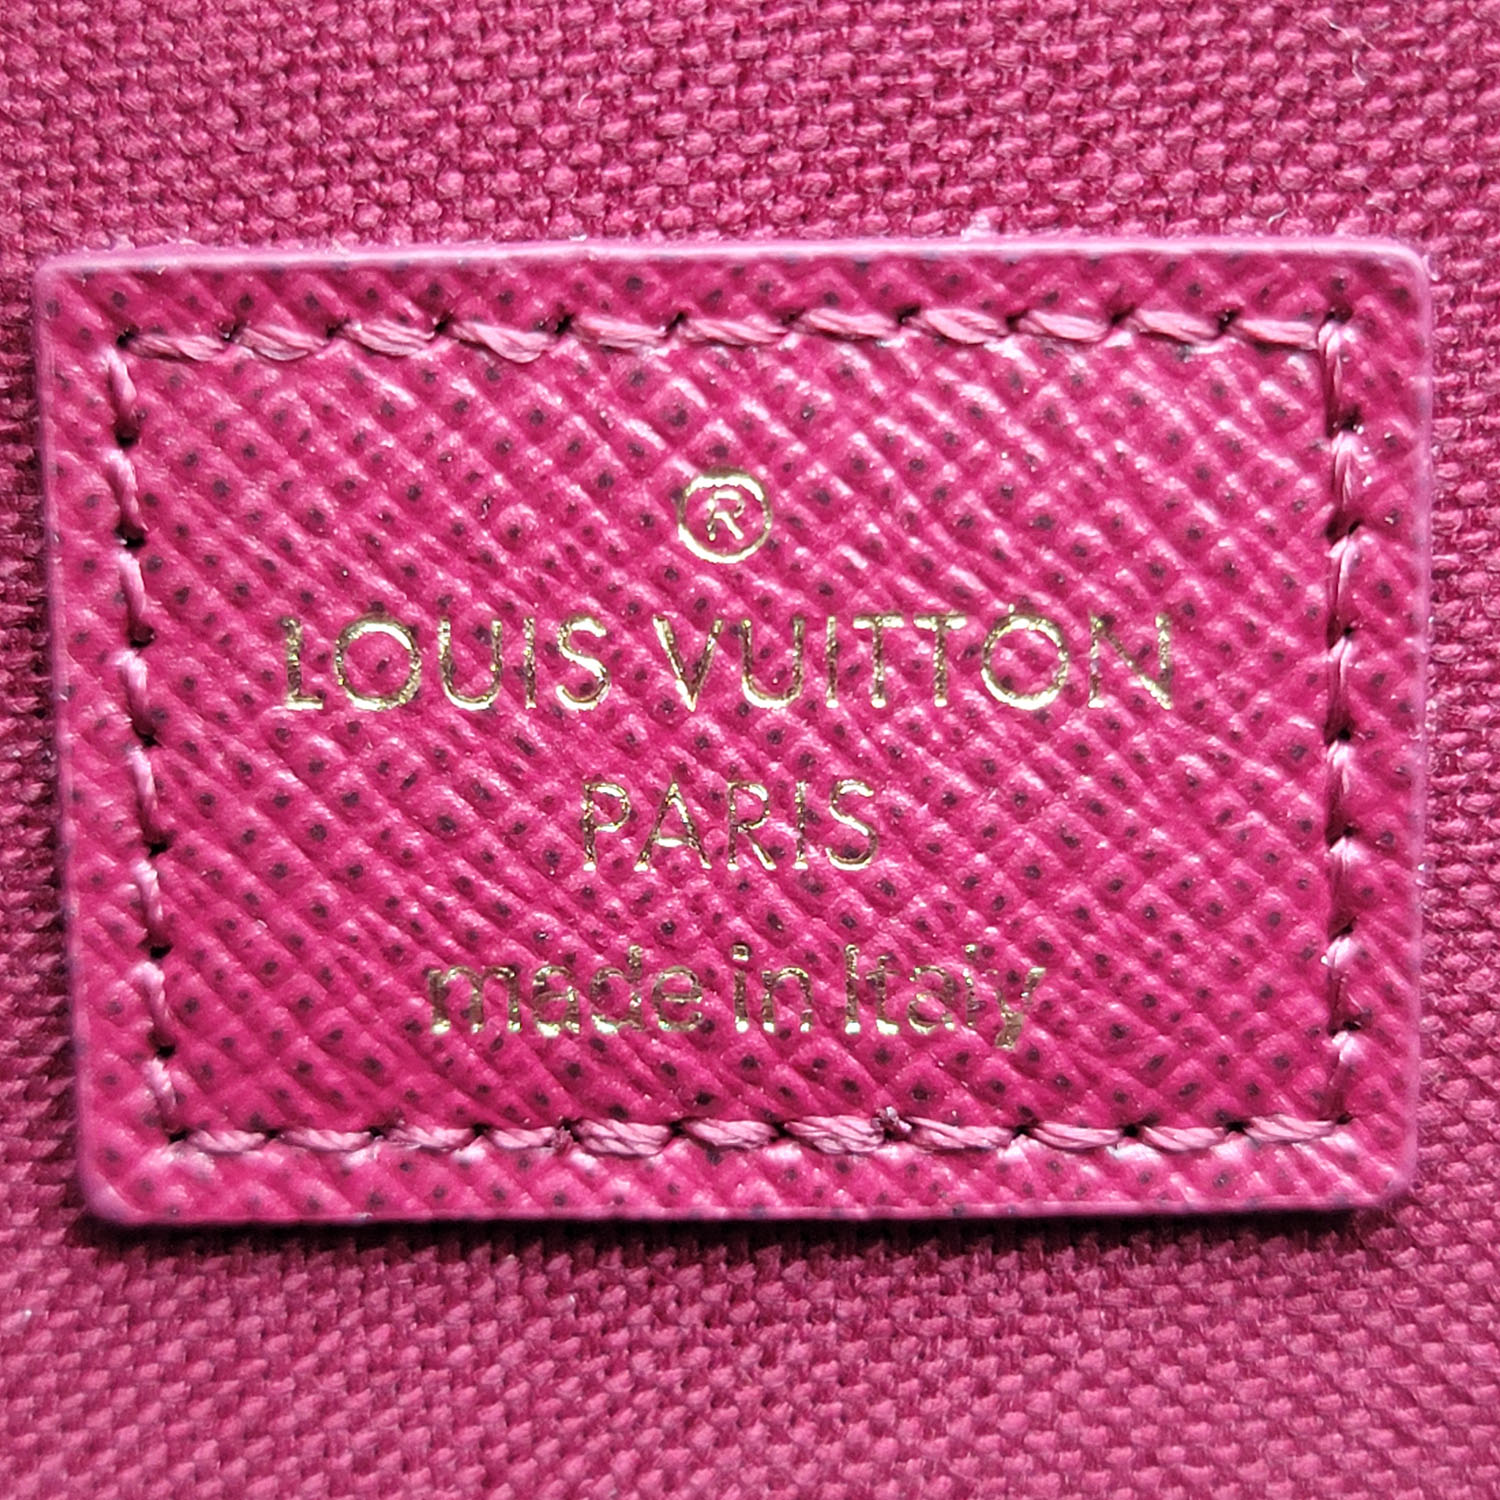 Félicie Pochette Monogram - Small Leather Goods, LOUIS VUITTON ®